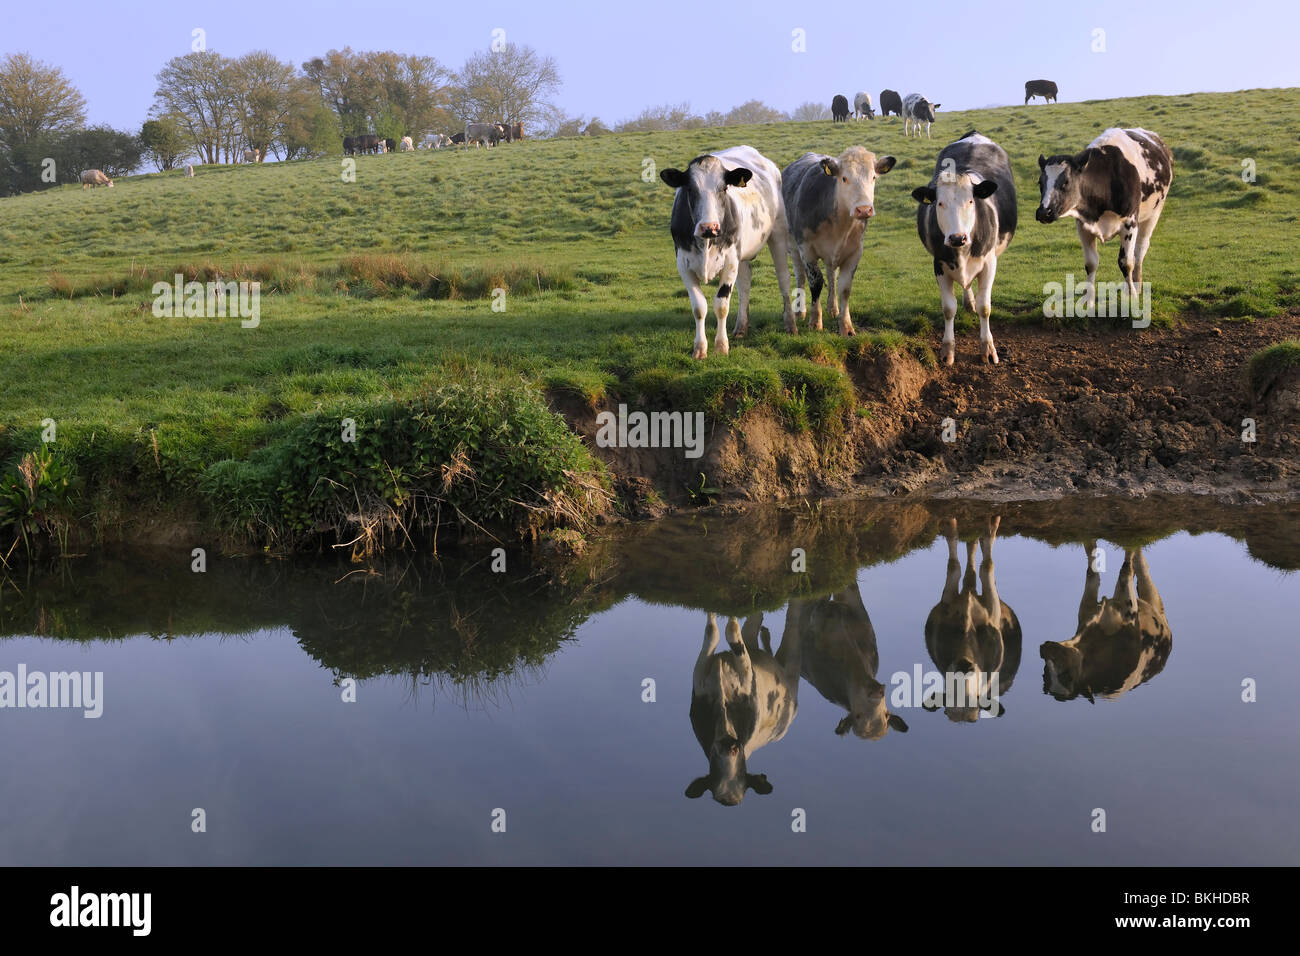 La réflexion de l'élevage - Bovins debout dans un champ près de la rivière Avon, dans le Wiltshire. Banque D'Images